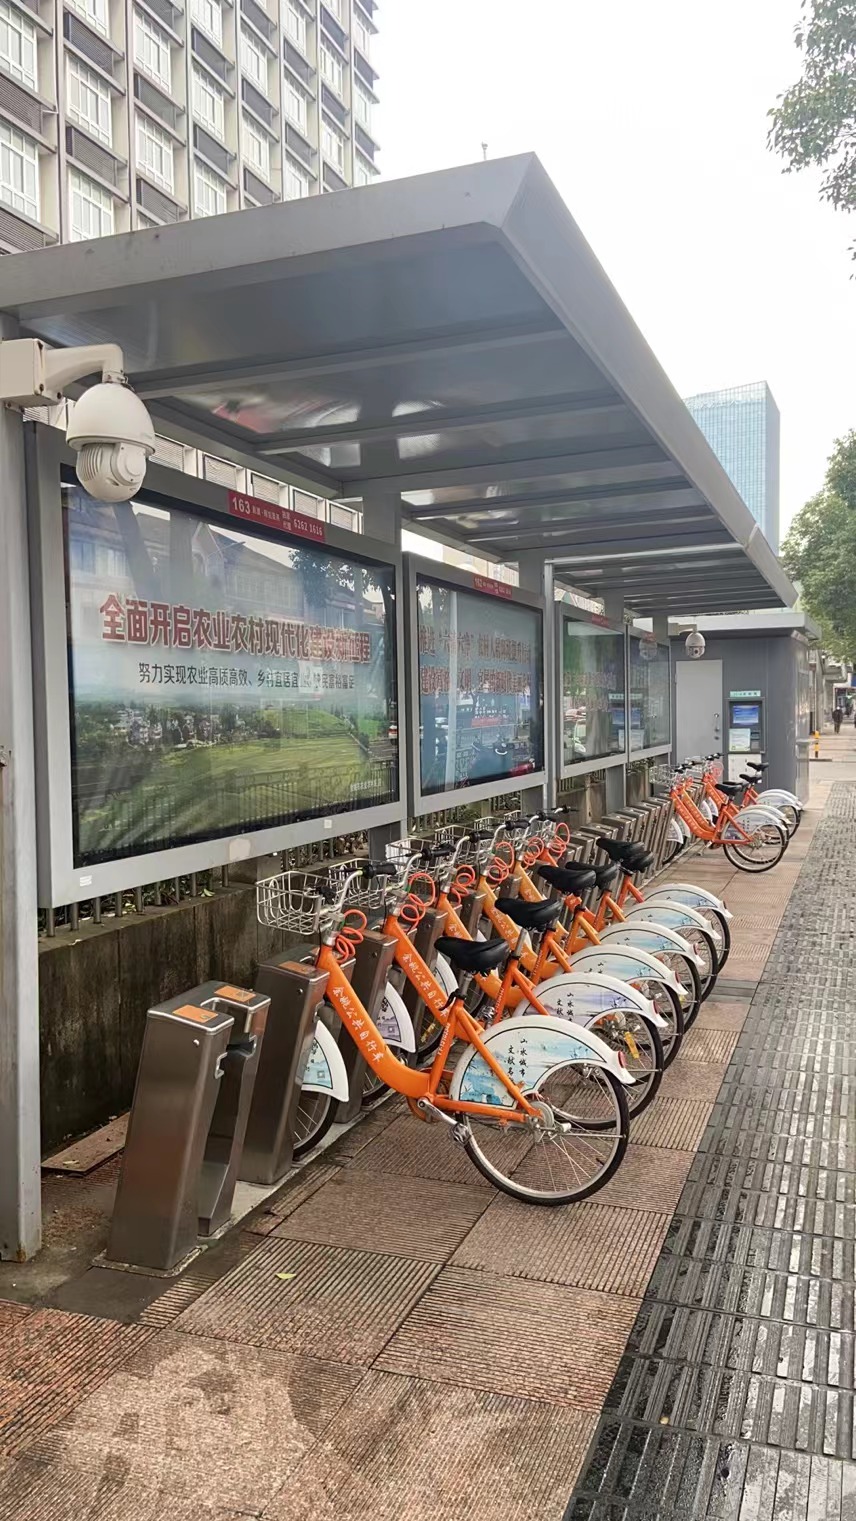 余姚市城区公共自行车停车棚广告位经营权网络拍卖公告